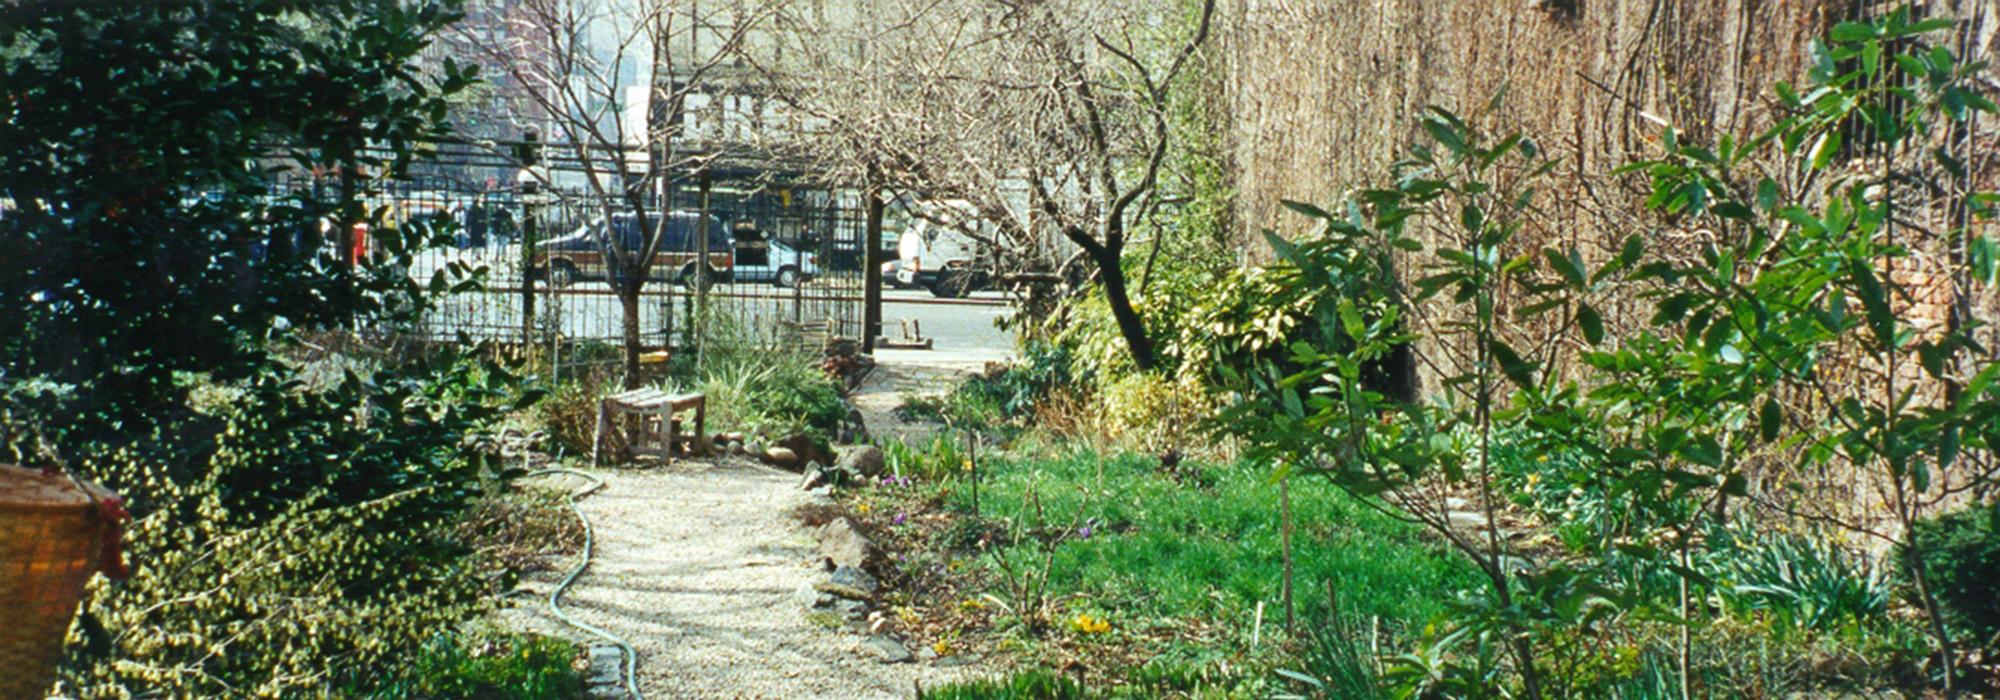 Liz Christy Community Garden, New York, NY